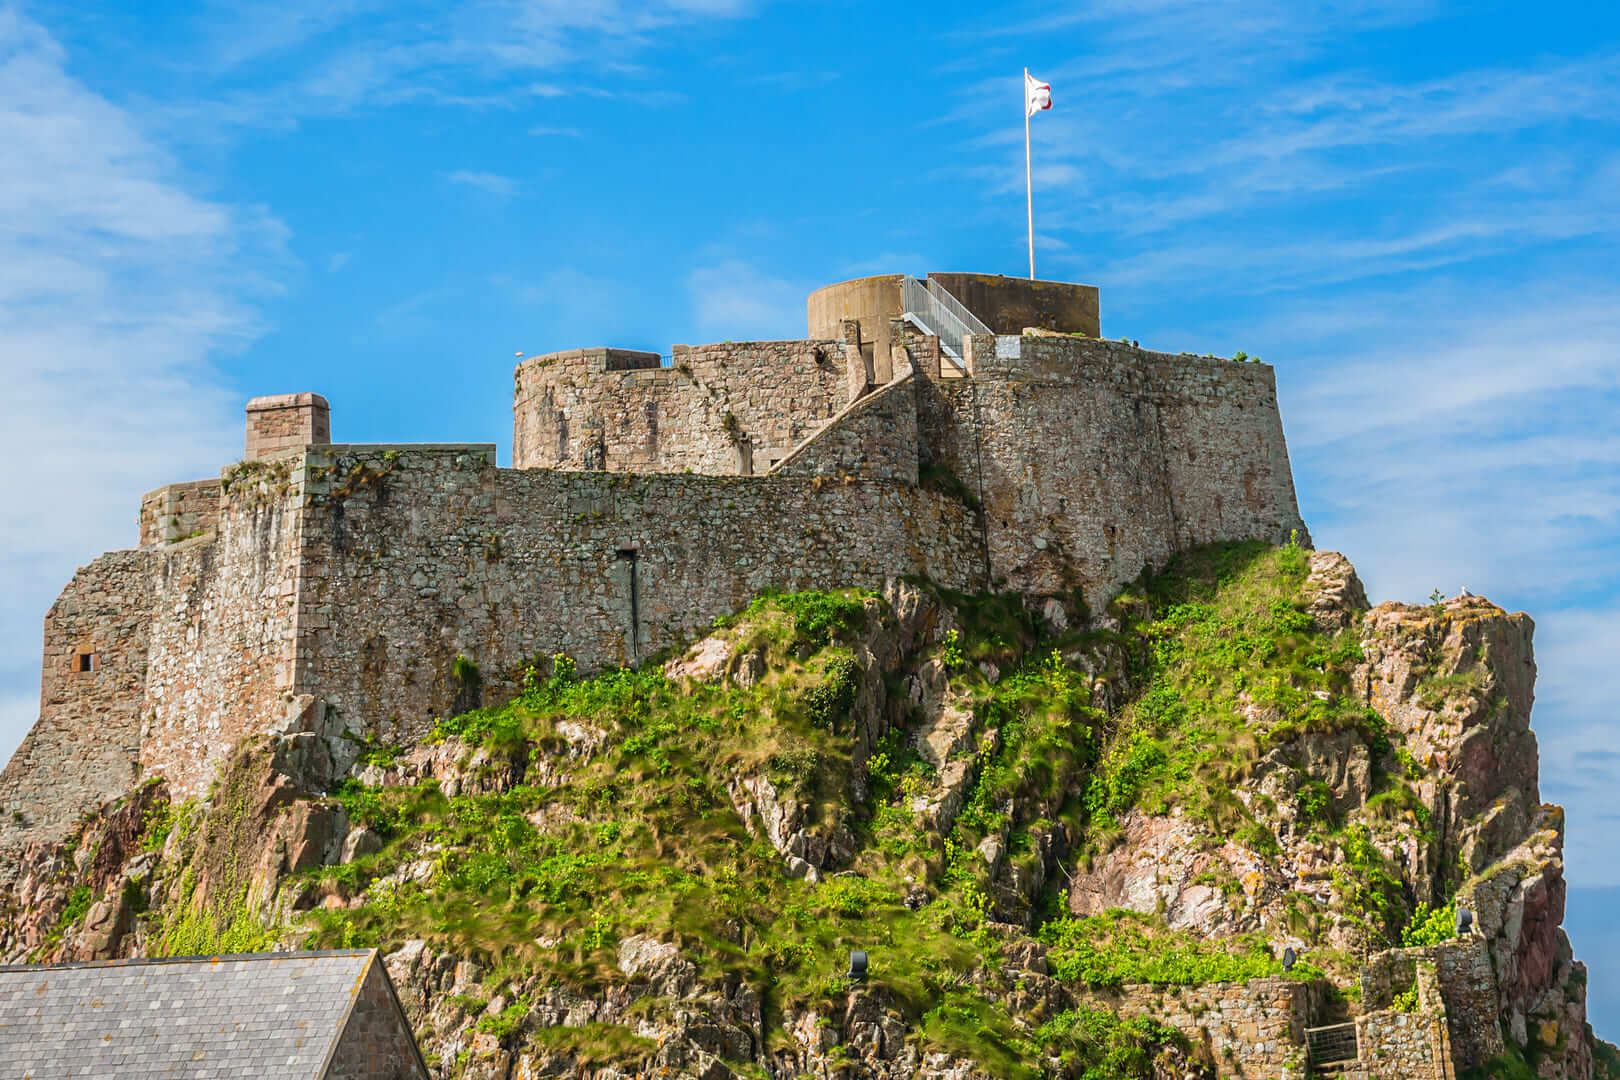 Замок Елизаветы (1594) - замок и туристическая достопримечательность на приливном острове в приходе Сент-Хелиер, Джерси, Великобритания